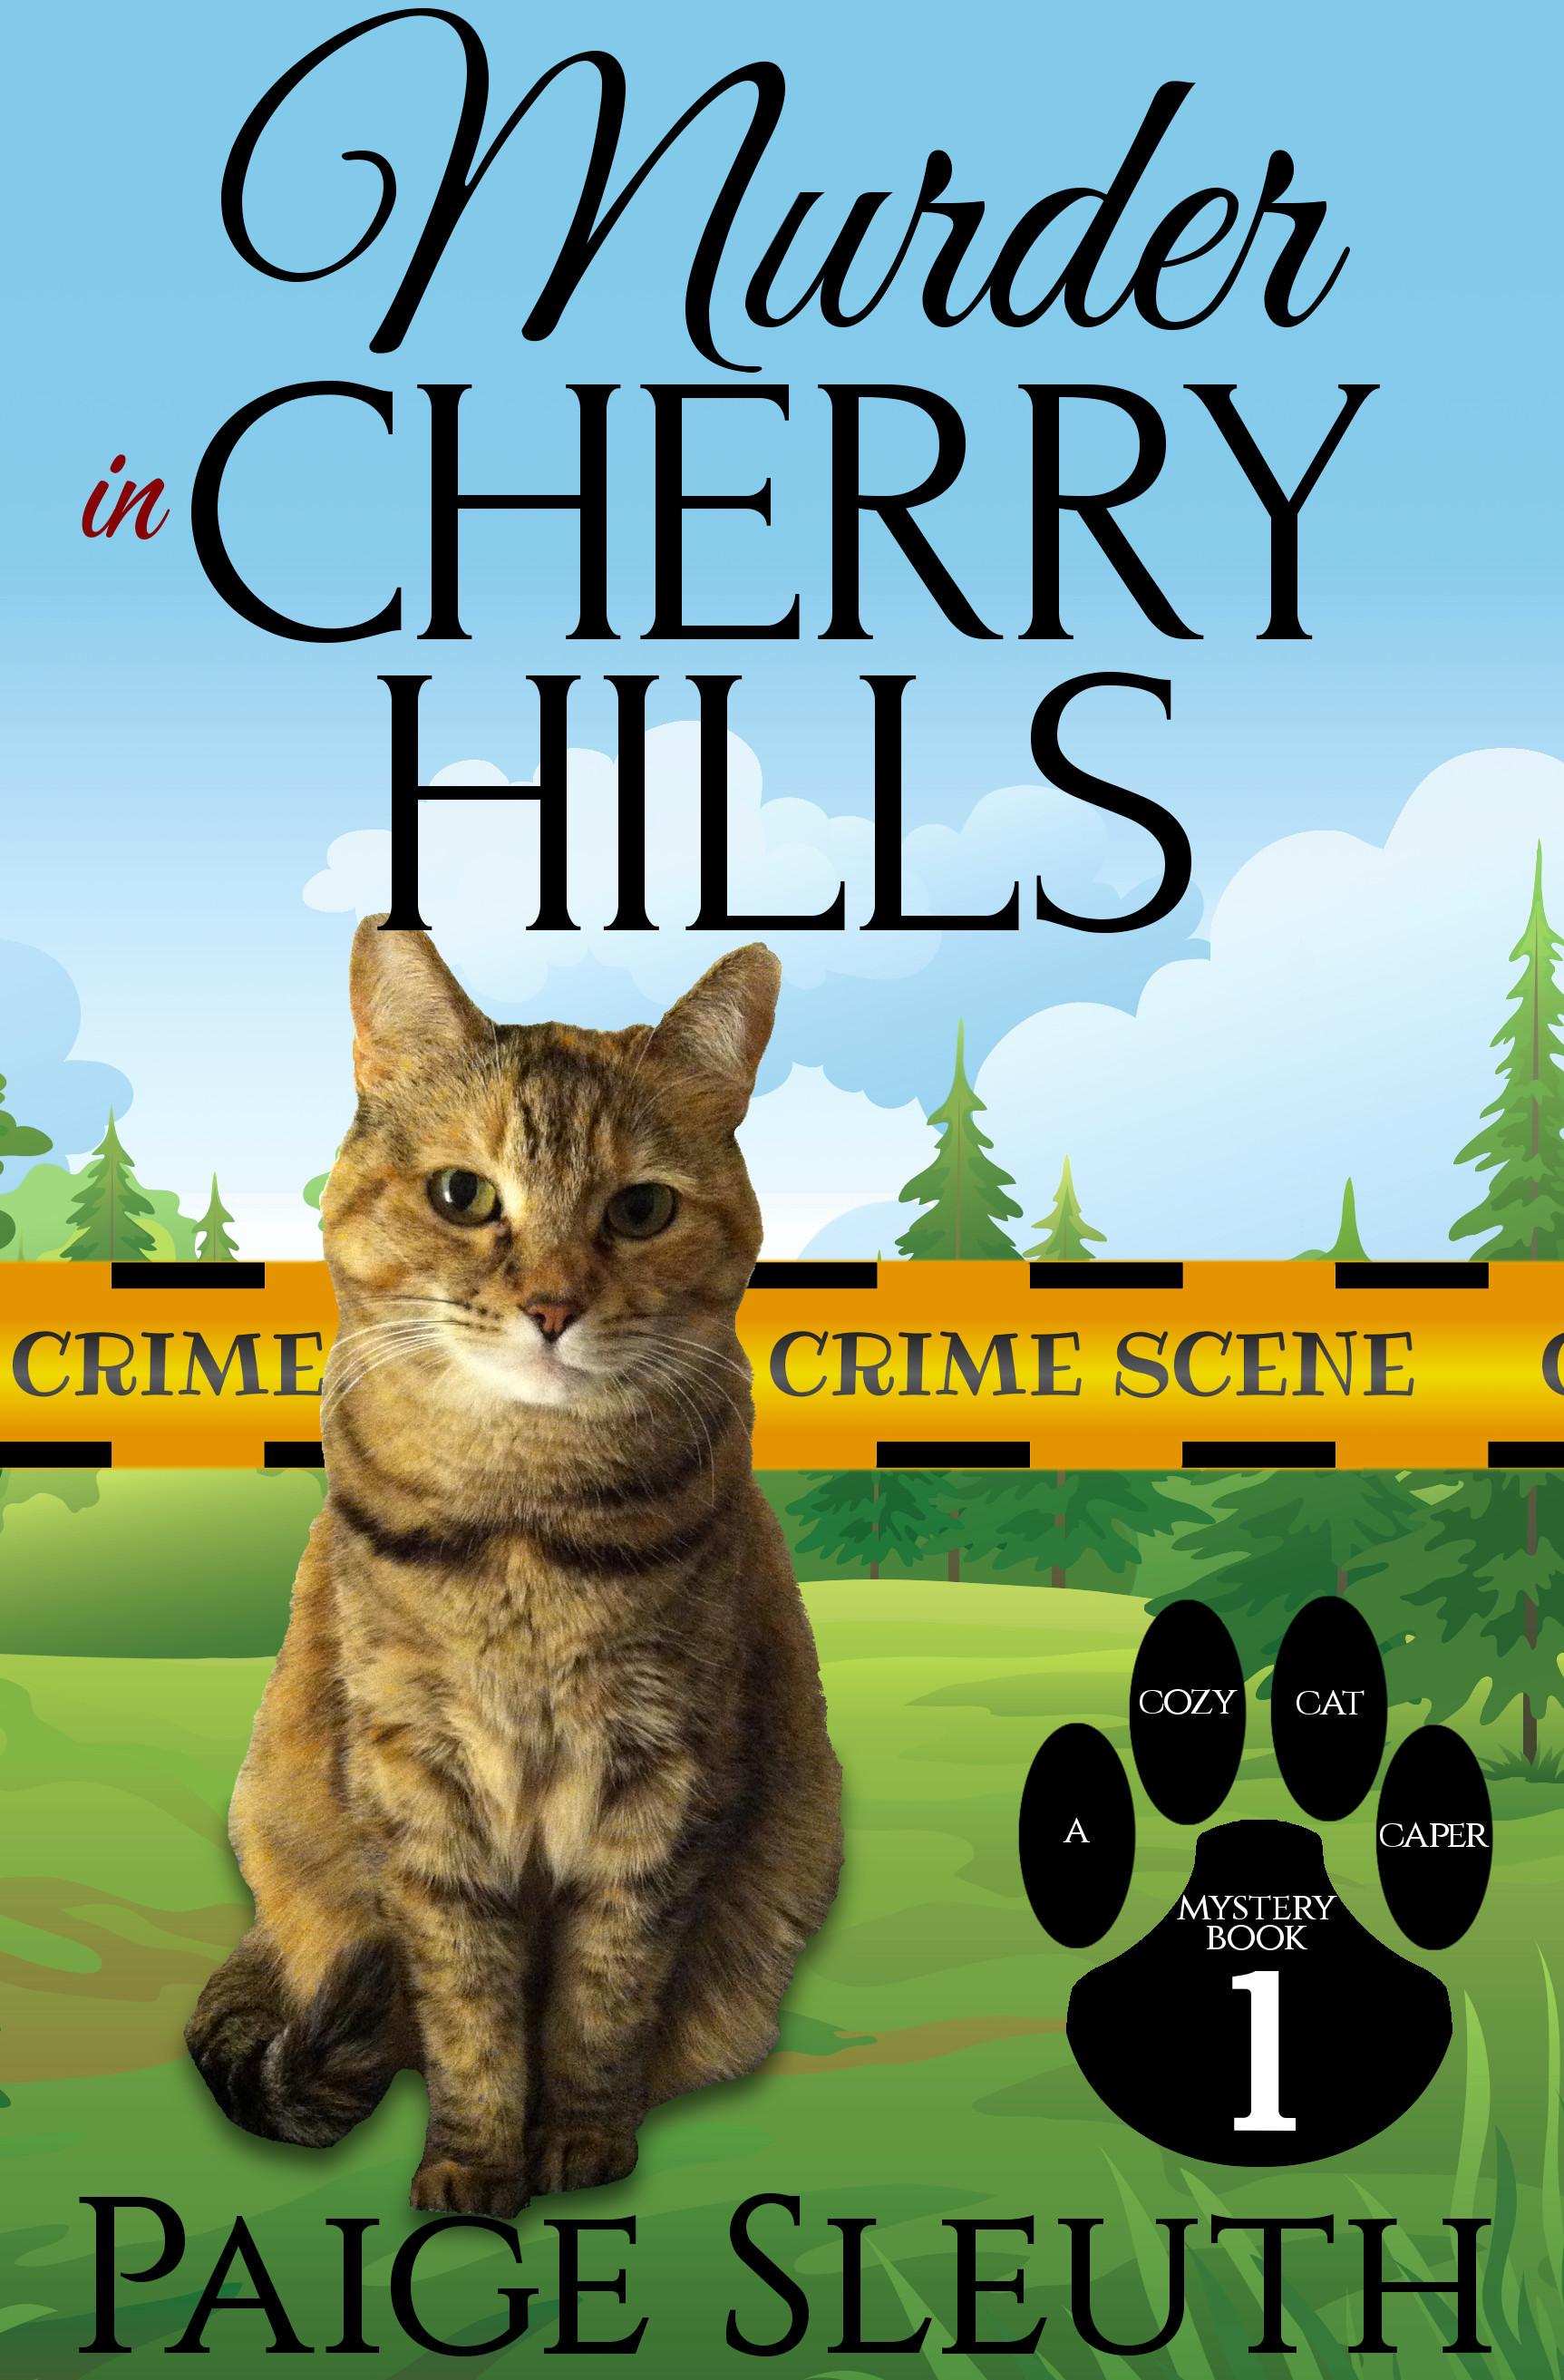 Murder in Cherry Hills